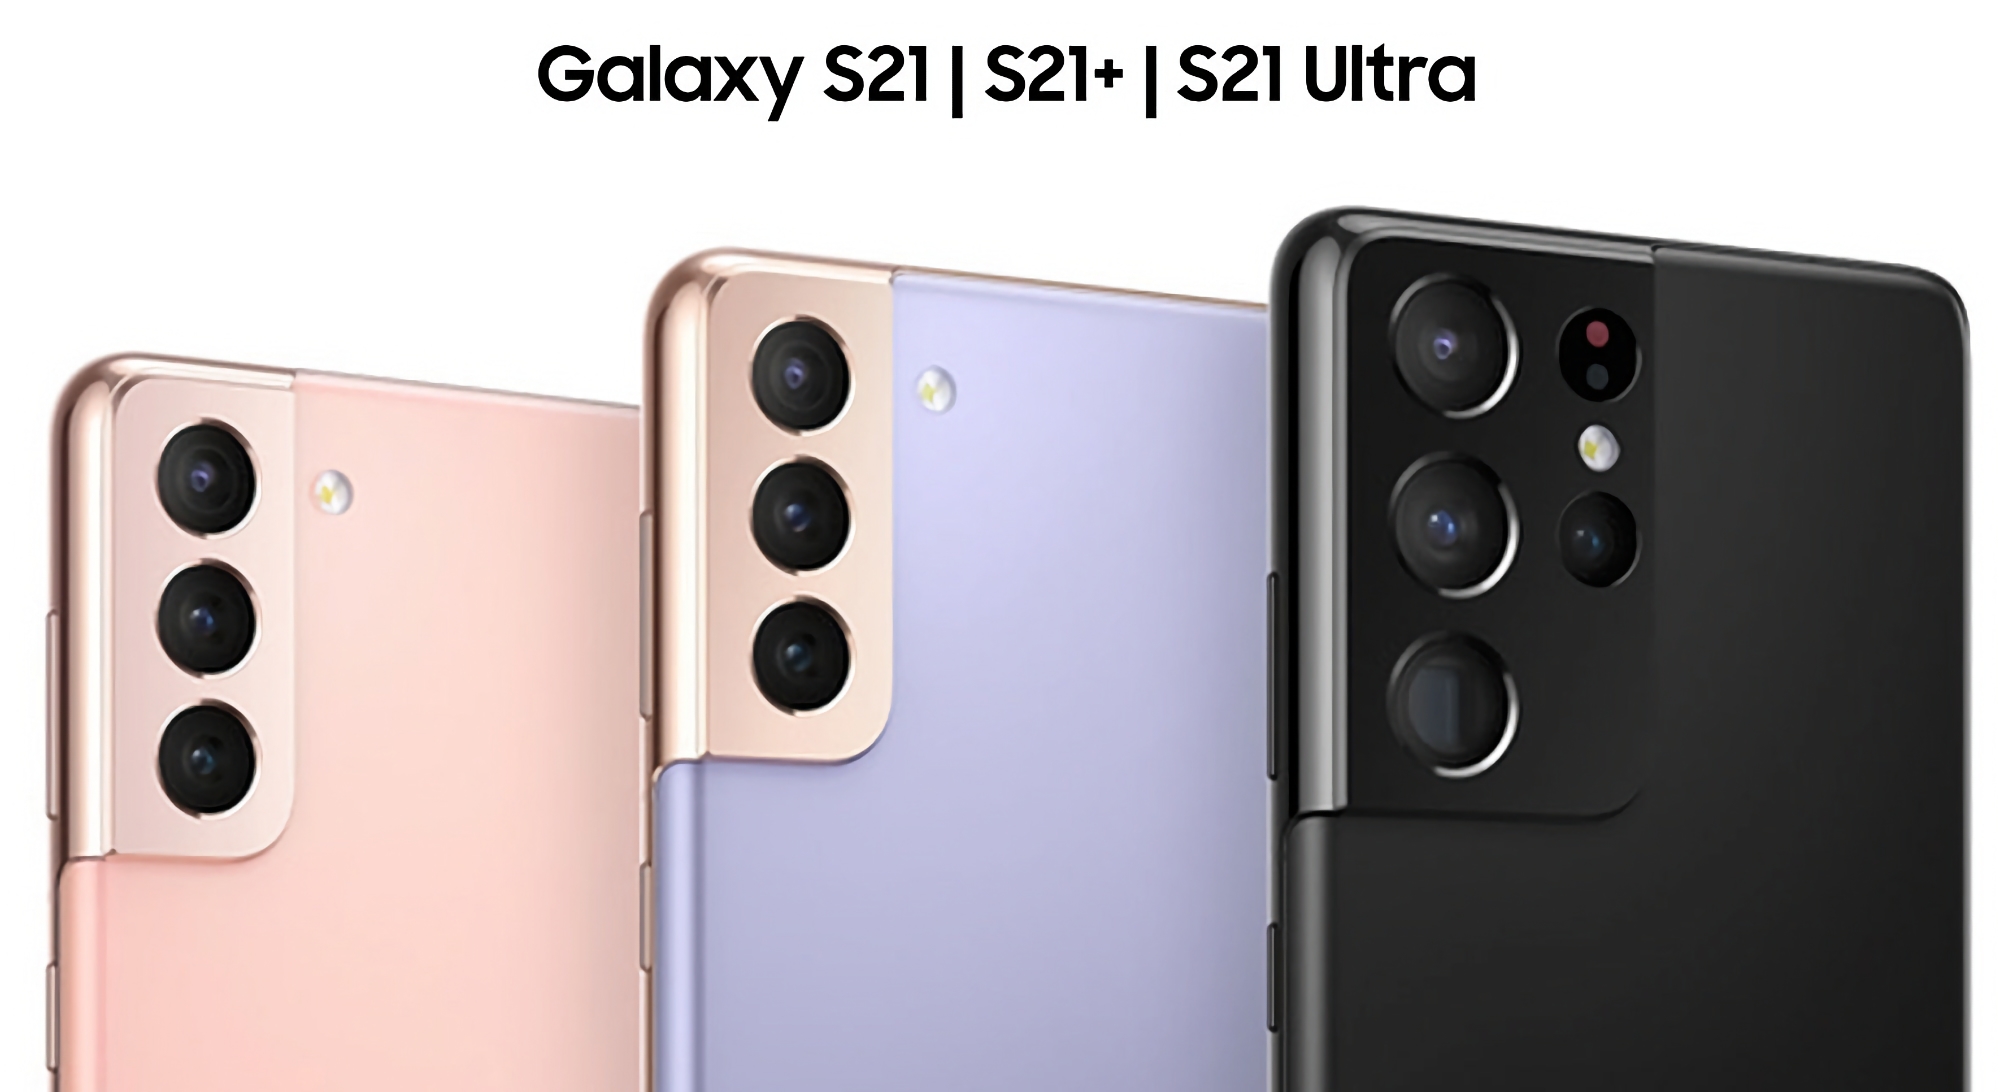 Por último, el firmware One UI 6.1 ya está disponible para los smartphones Galaxy S21, Galaxy S21+ y Galaxy S21 Ultra